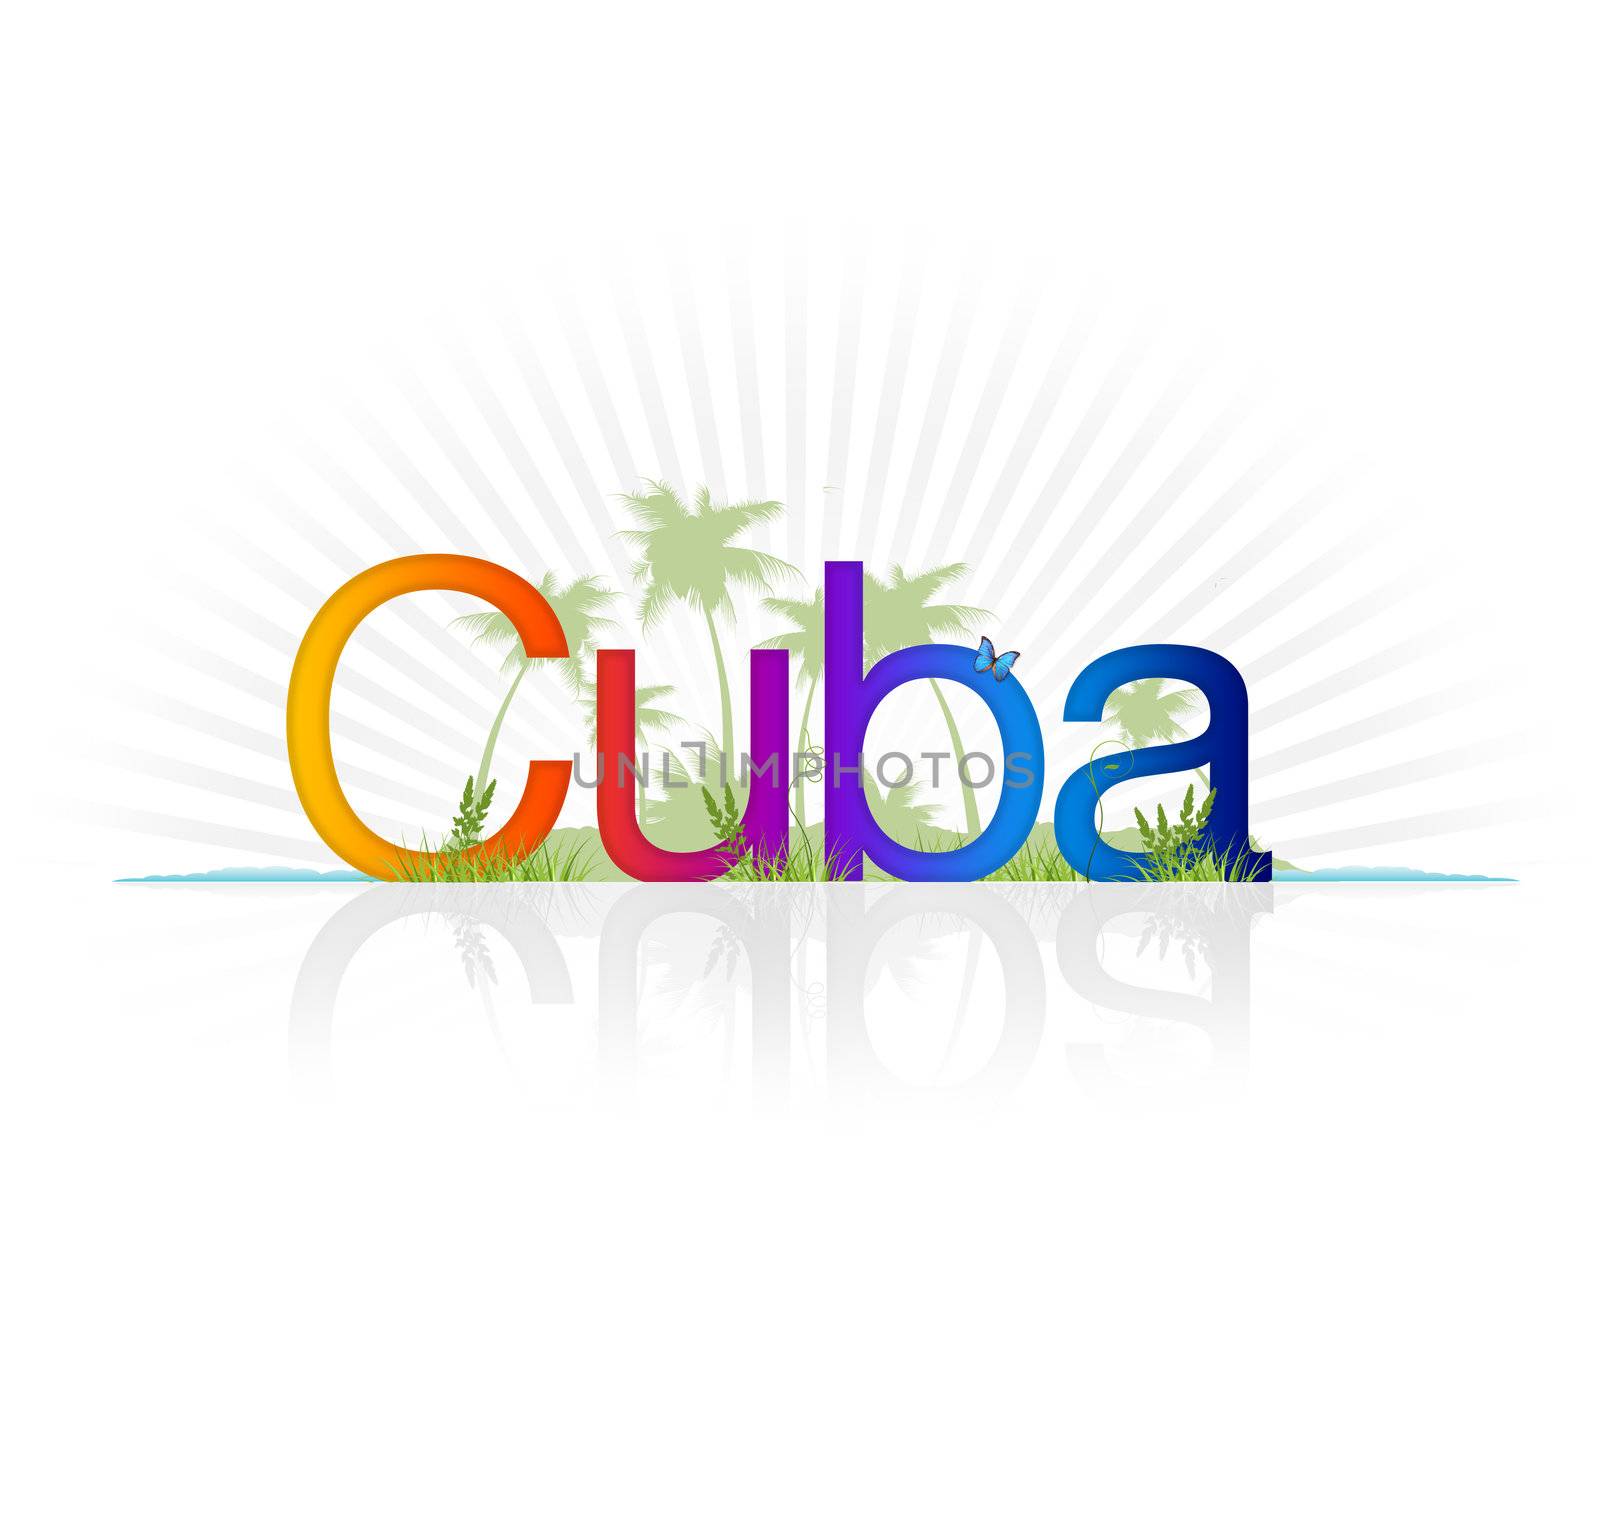 Cuba by kbuntu